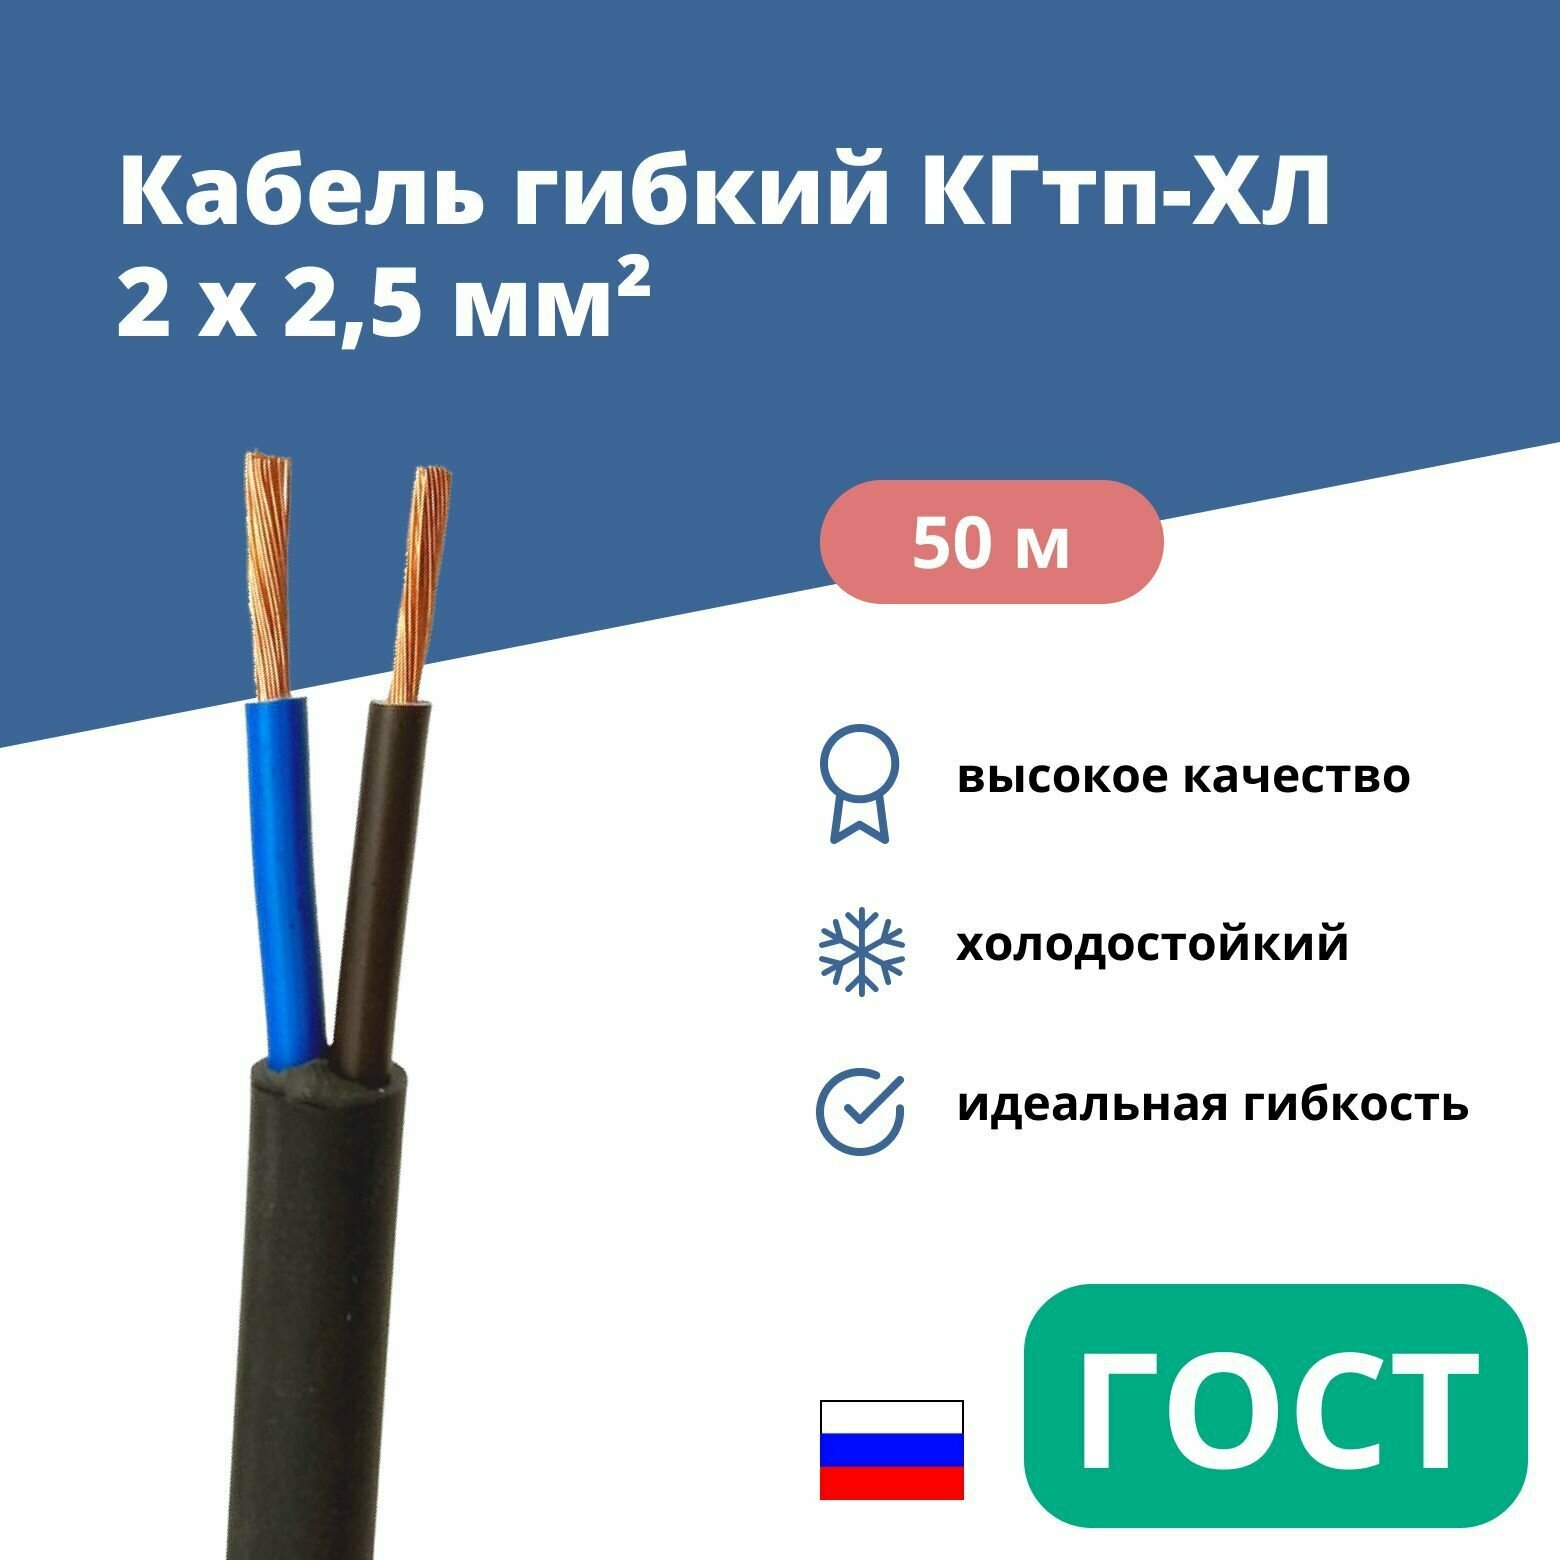 Силовой сварочный кабель гибкий кгтп-хл 2х2,5 уп. 50м.